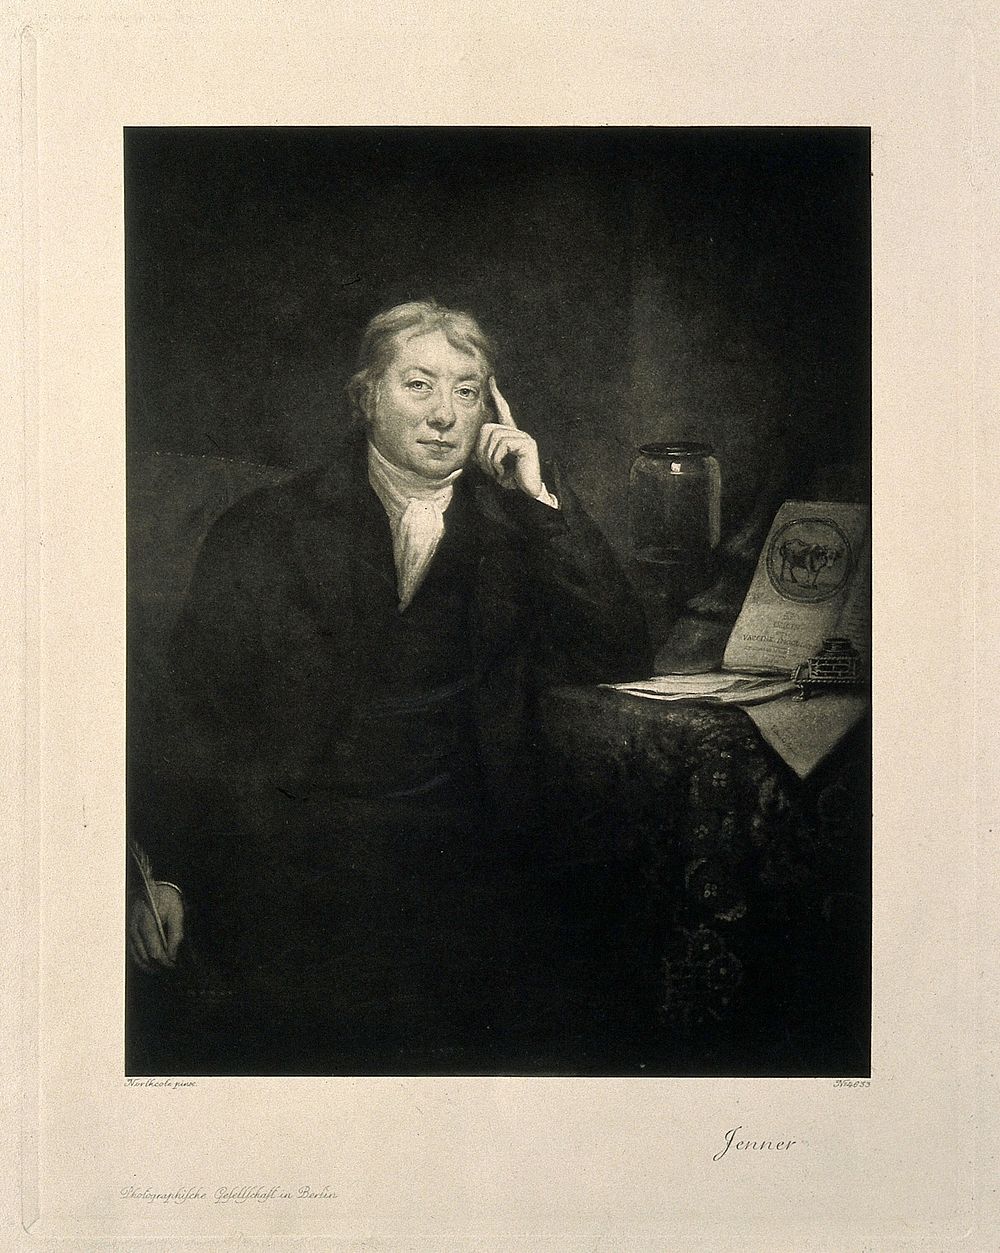 Edward Jenner. Photogravure after J. Northcote, 1803.